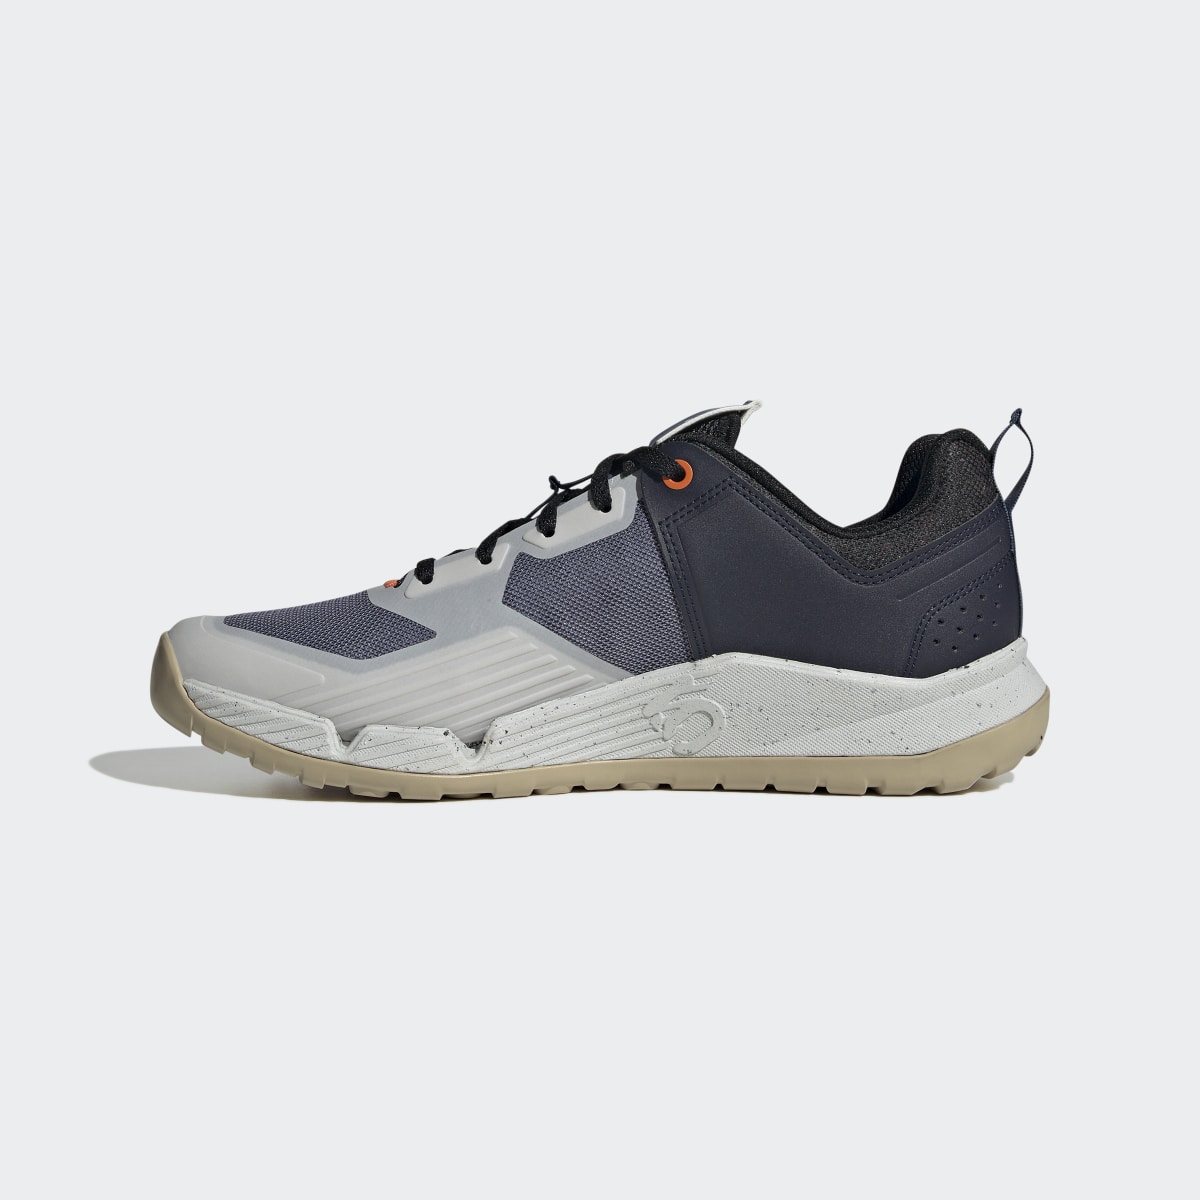 Adidas Five Ten Trailcross XT Shoes. 7